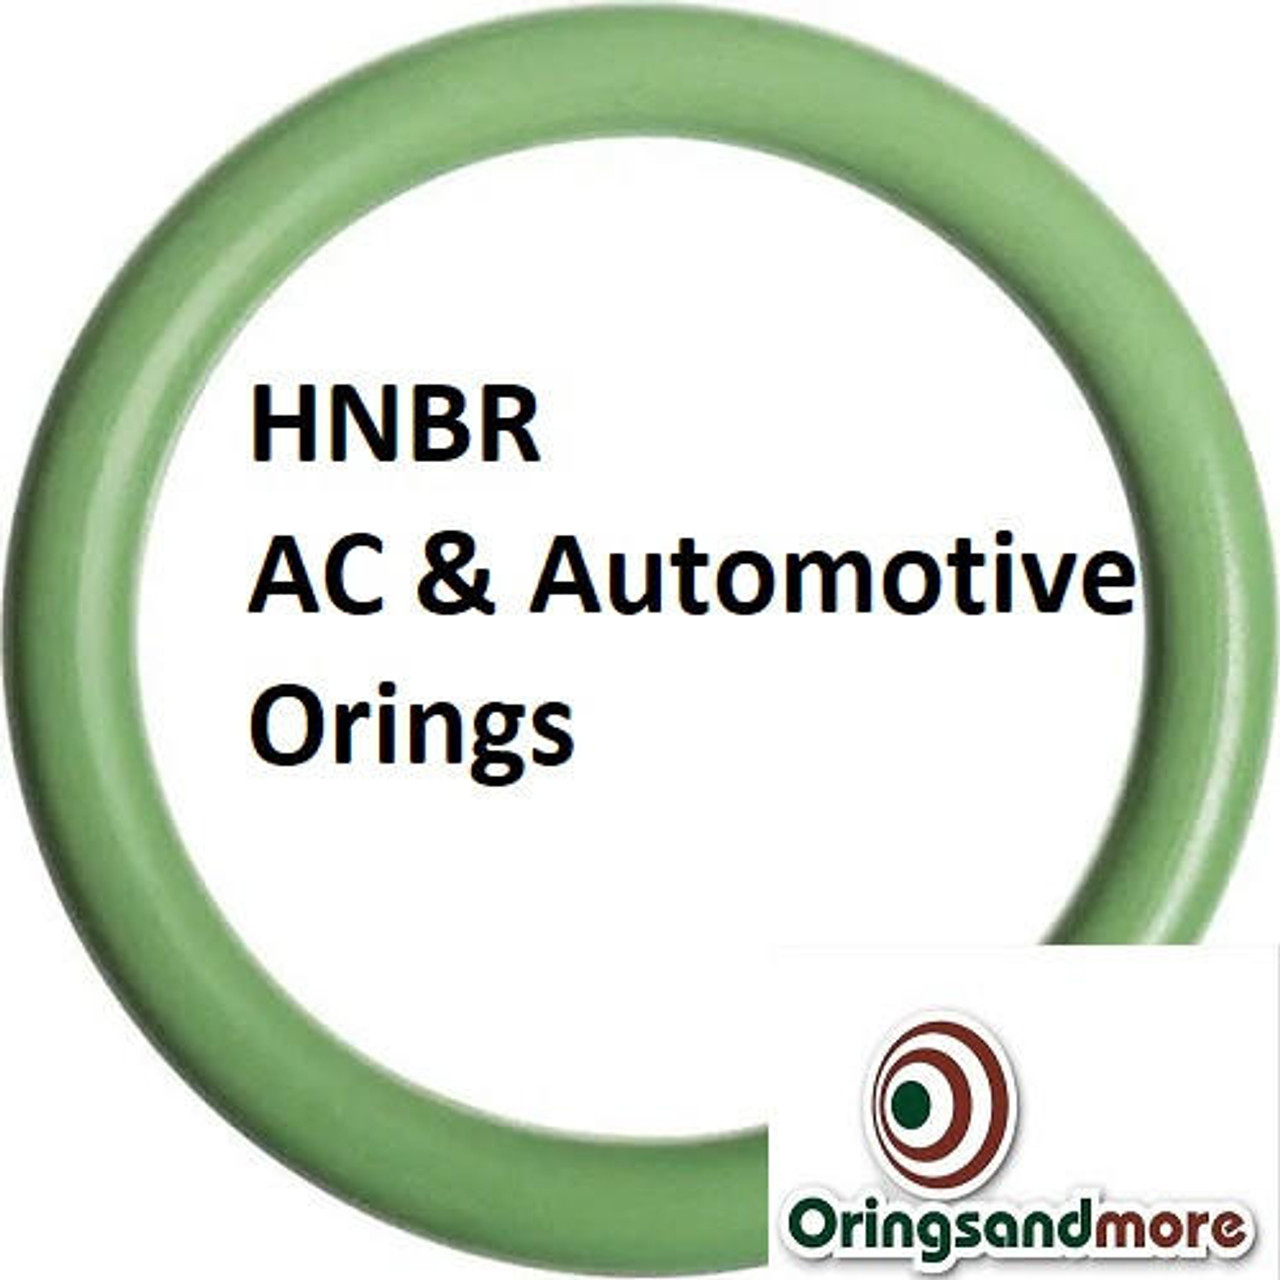 HNBR Orings  # 019-70D Green  Minimum 10 pcs